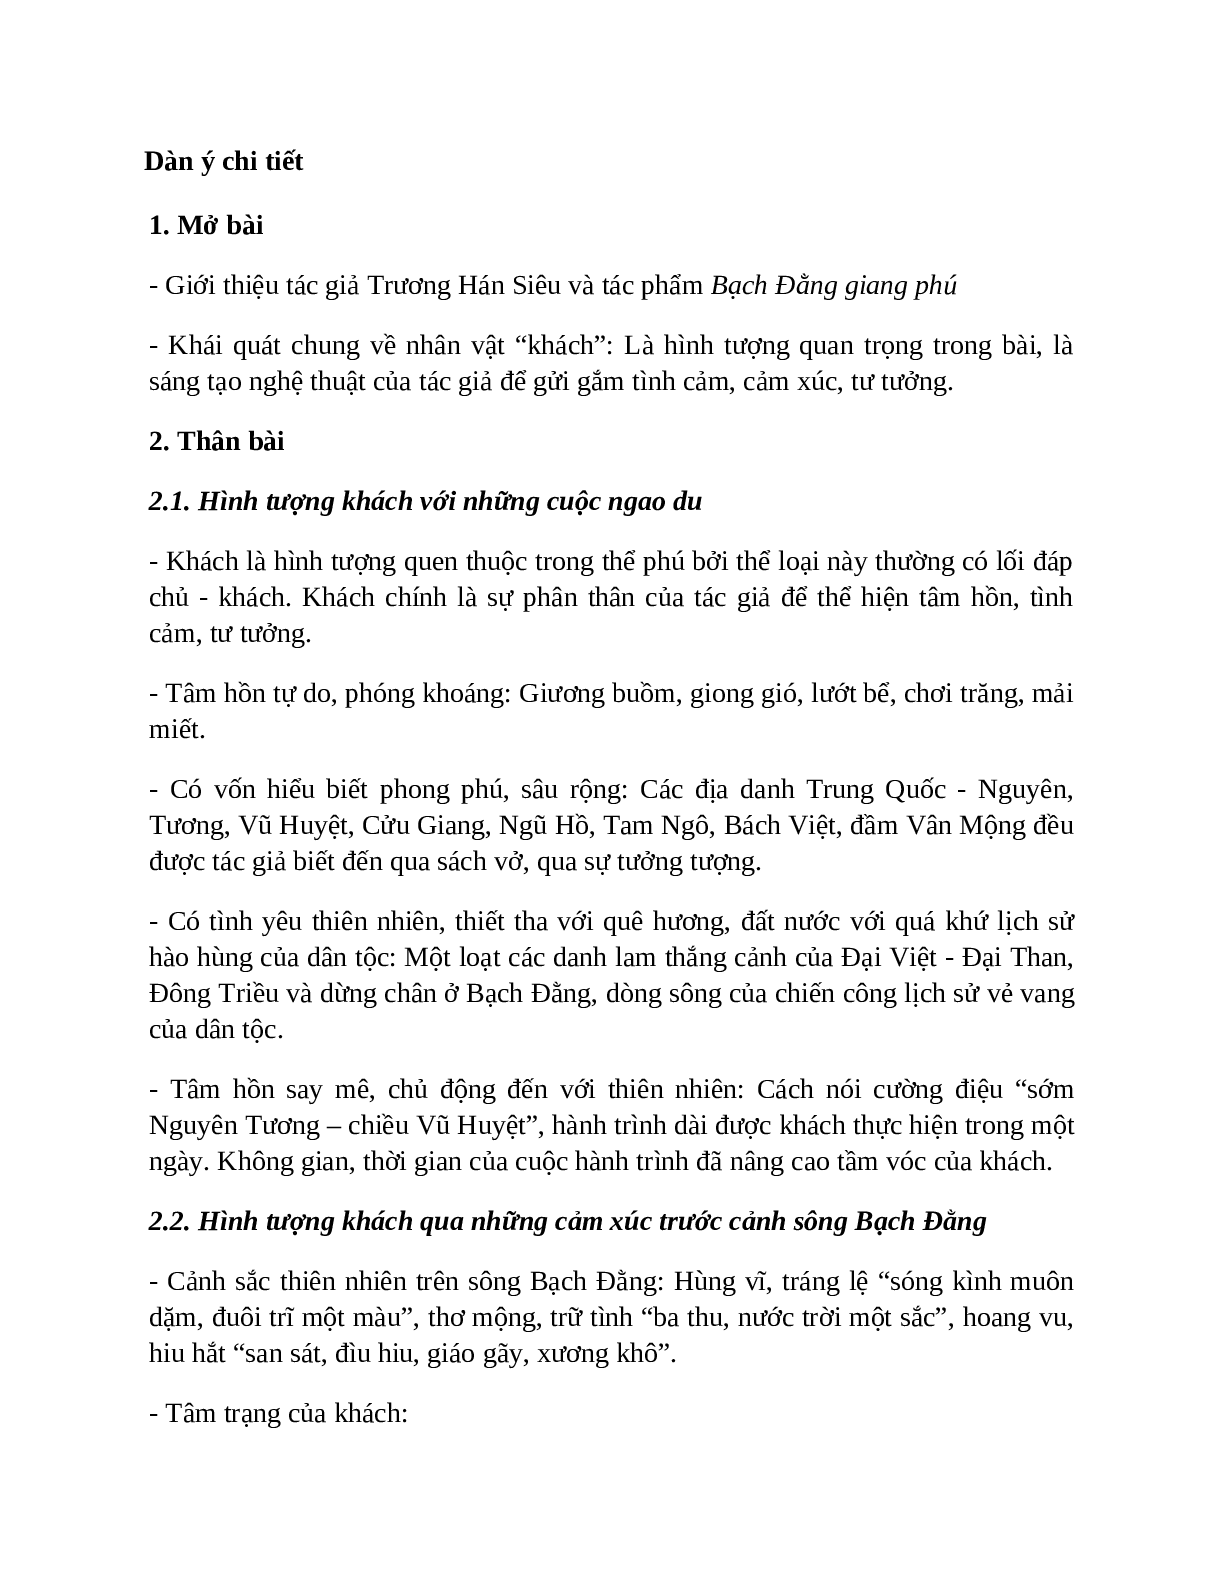 TOP 17 bài mẫu Phân tích nhân vật khách trong bài thơ Phú sông Bạch Đằng SIÊU HAY (trang 6)